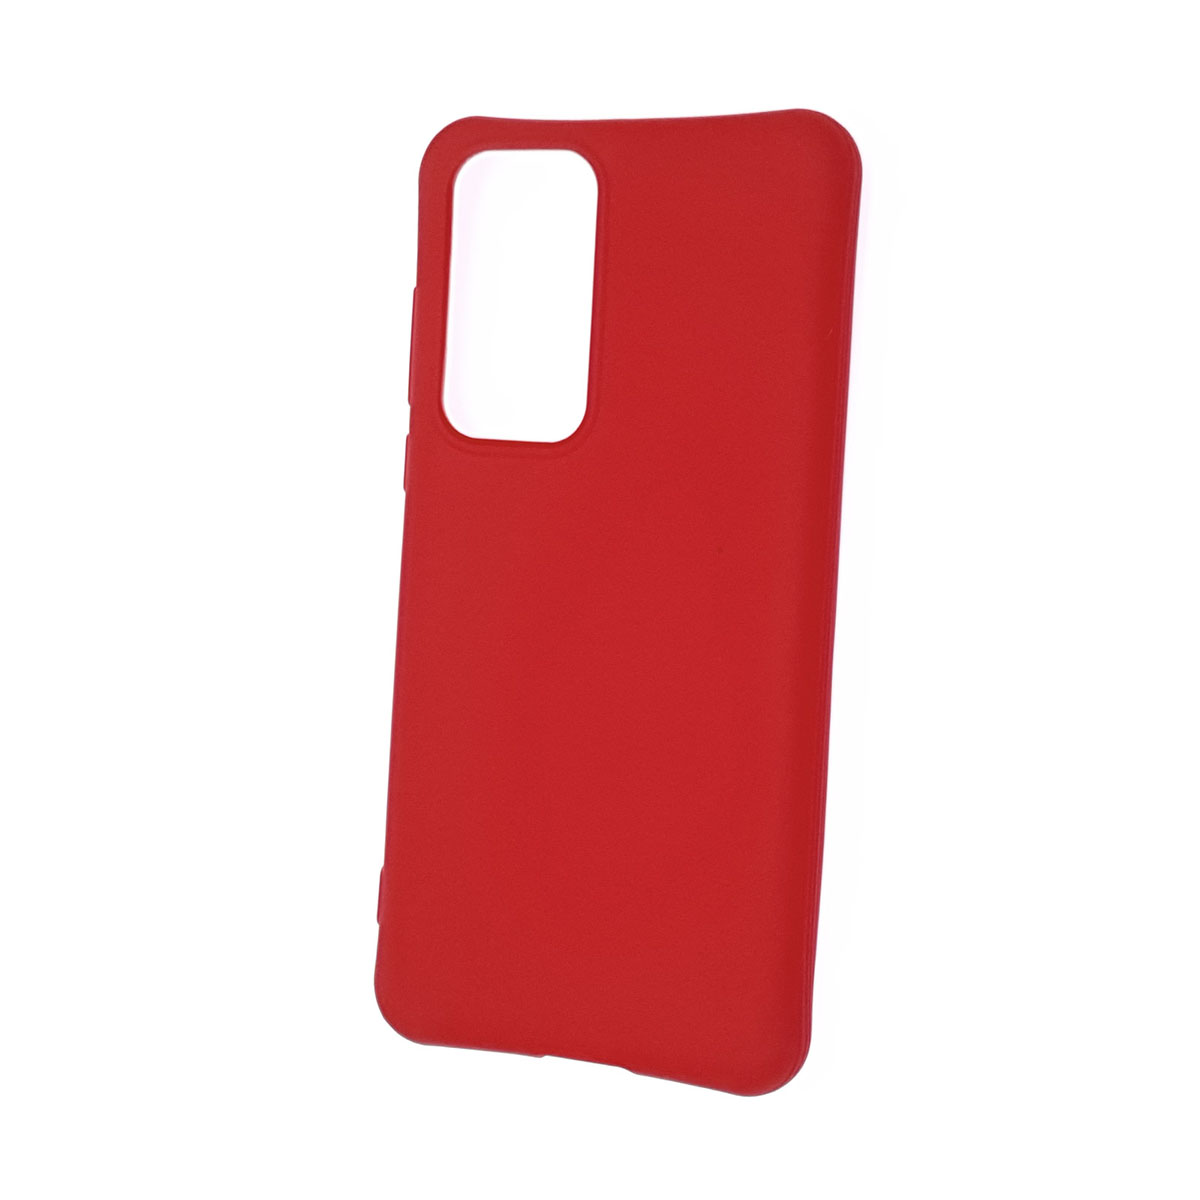 Чехол накладка SLIM MATTE для HUAWEI P40 (ANA-NX9), силикон, матовый, цвет красный.